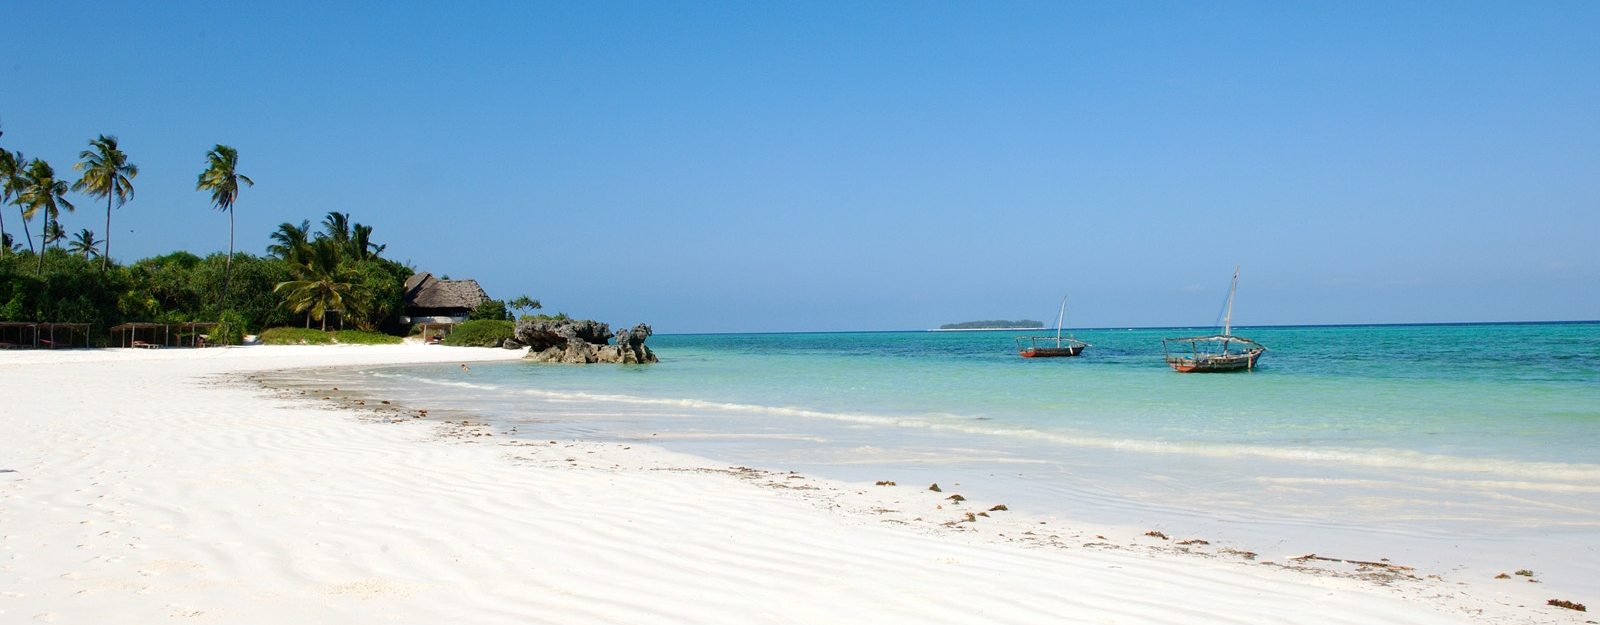 Tanzania Zanzibar Beach